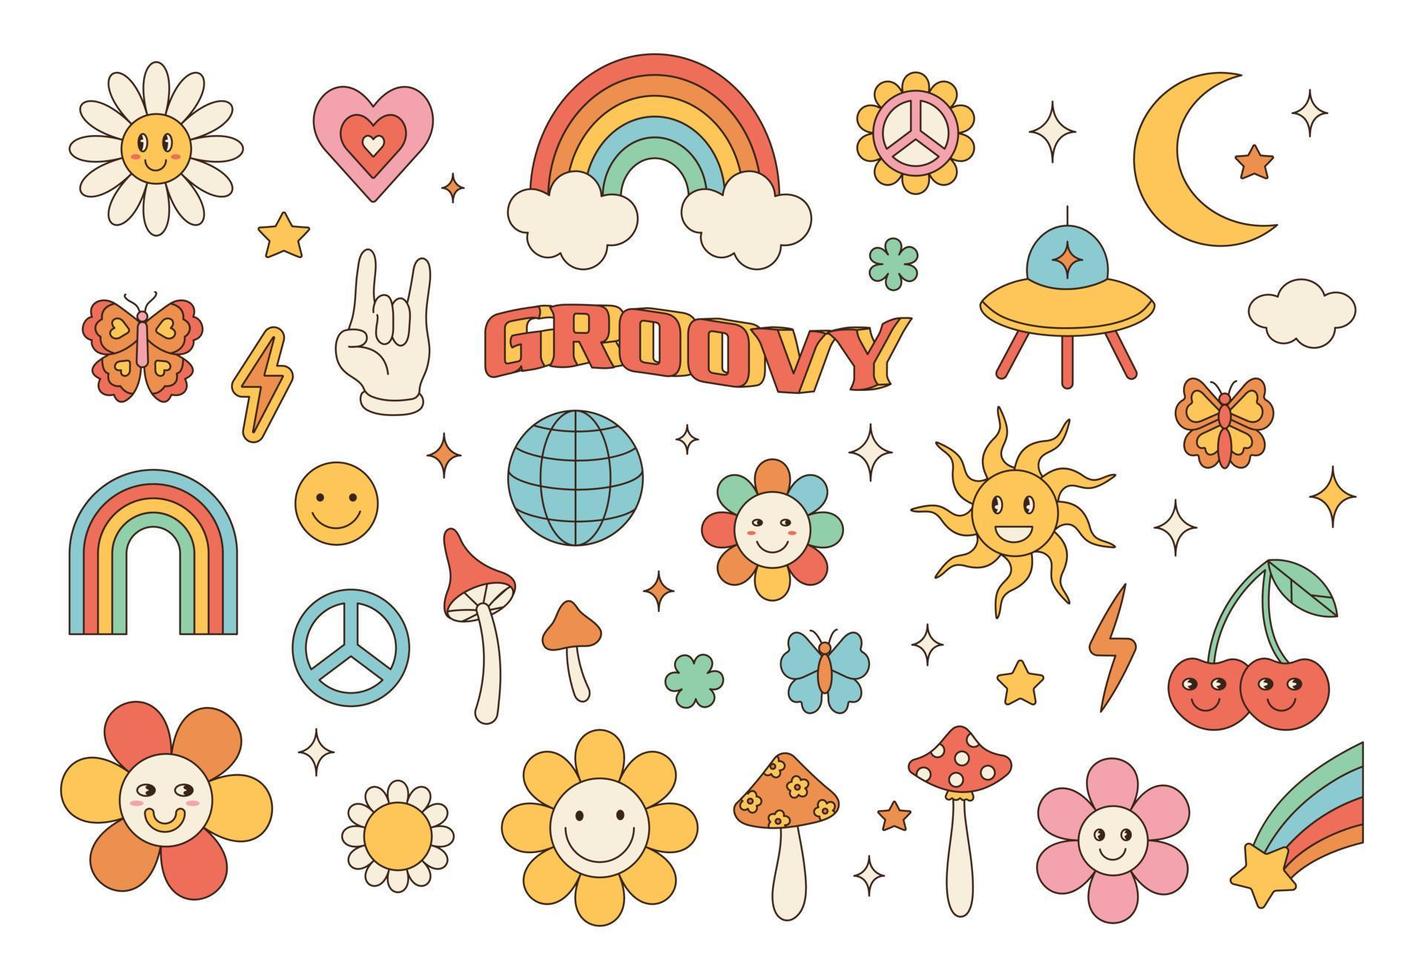 ensemble hippie groovy des années 70. fleur de dessin animé drôle, arc-en-ciel, paix, amour, coeur, marguerite, champignon, etc. pack d'autocollants dans un style de dessin animé psychédélique rétro à la mode. vecteur